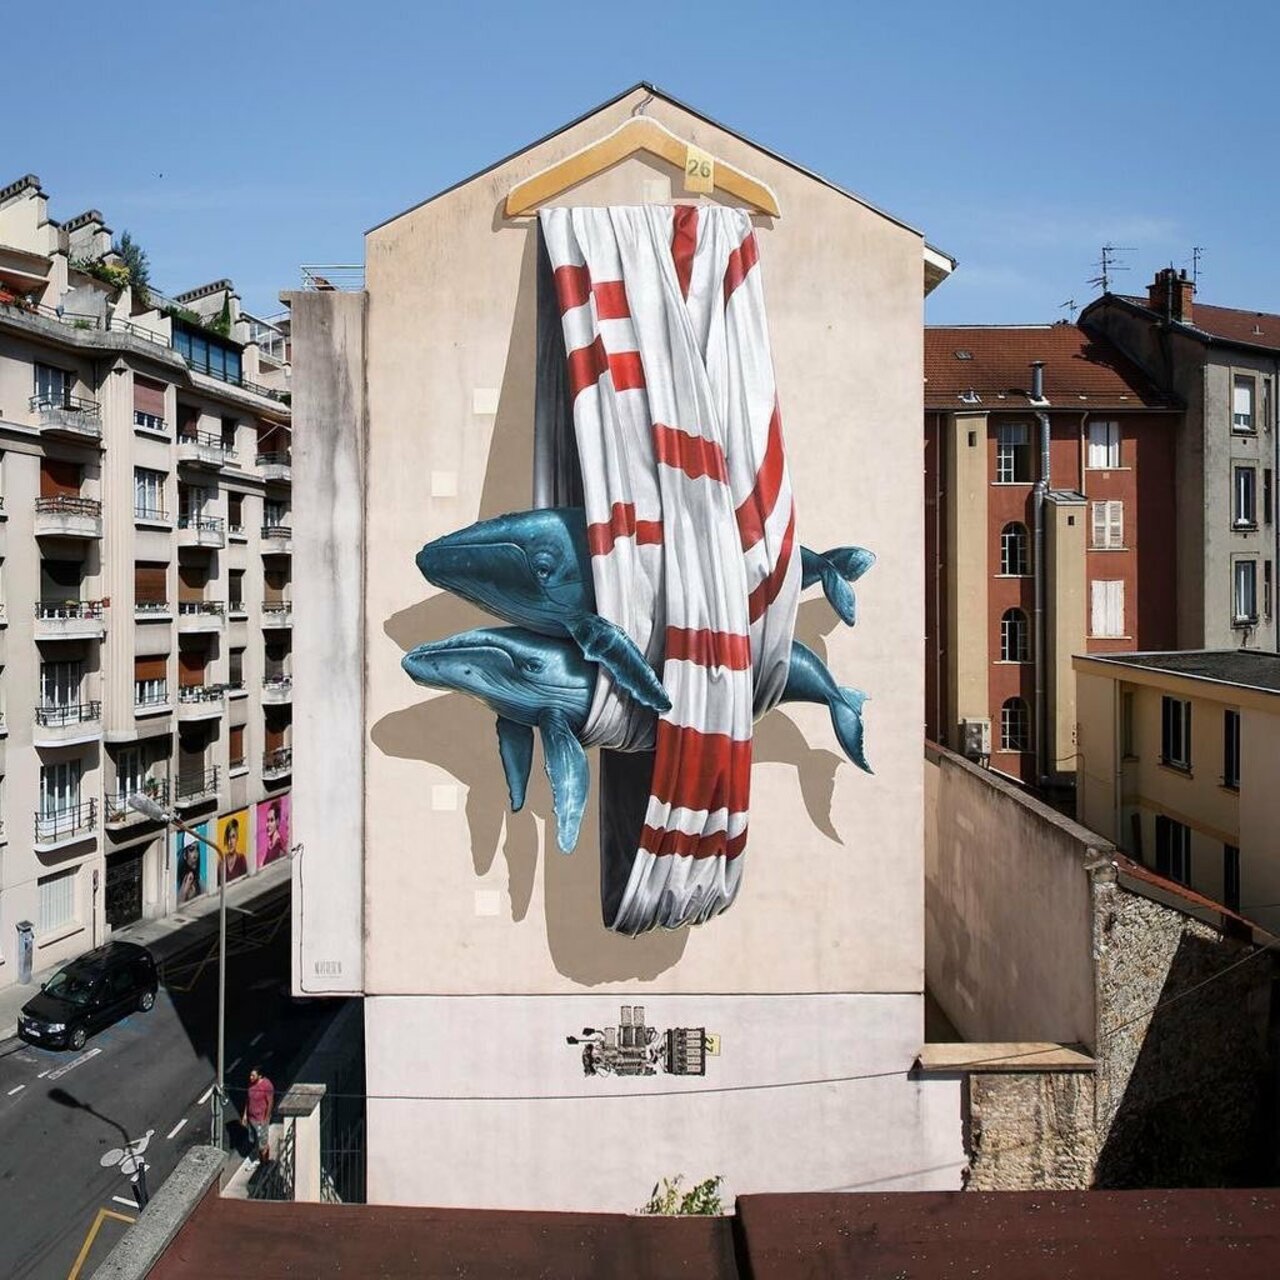 #mural by never crew #Grenoble #France #streetart #art #urbanart #graffiti https://t.co/Rcc5iaCGl0